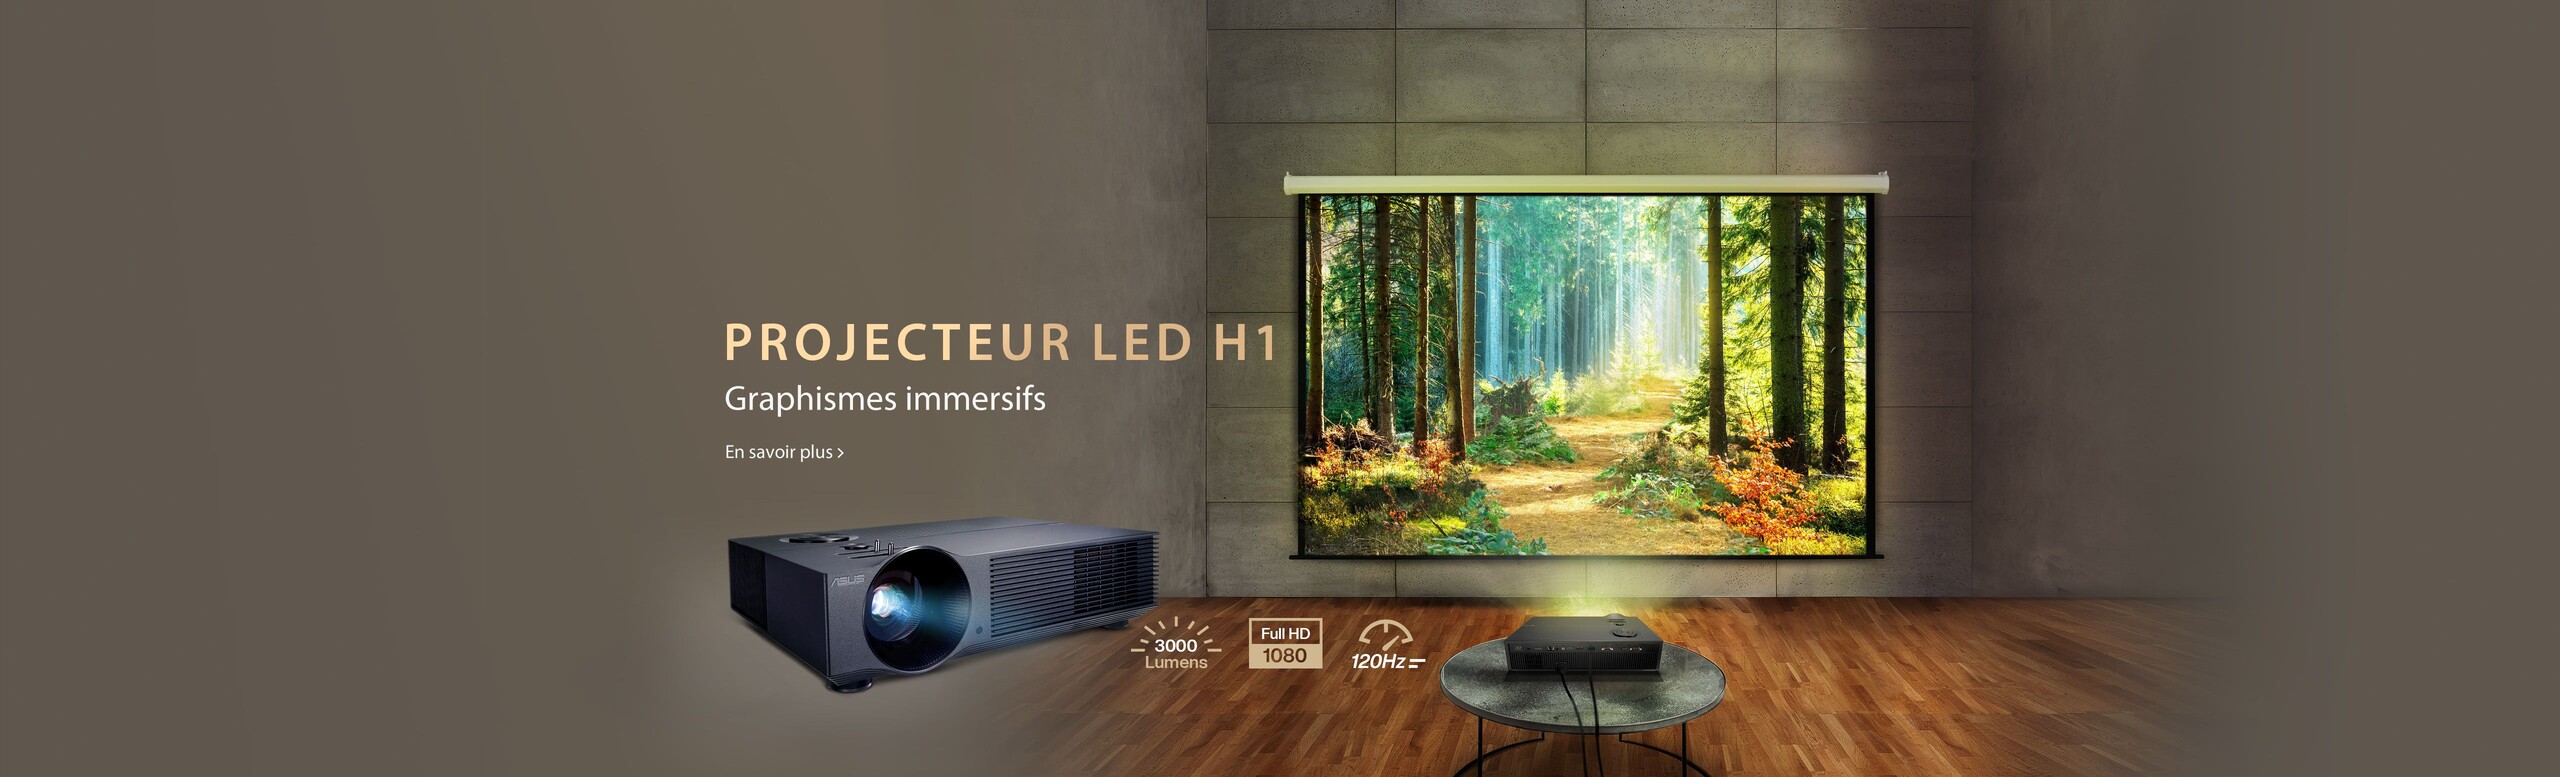 Projecteur LED H1 Graphismes immersifs En Savoir plus FHD, 3000 Lumens, 120 Hz